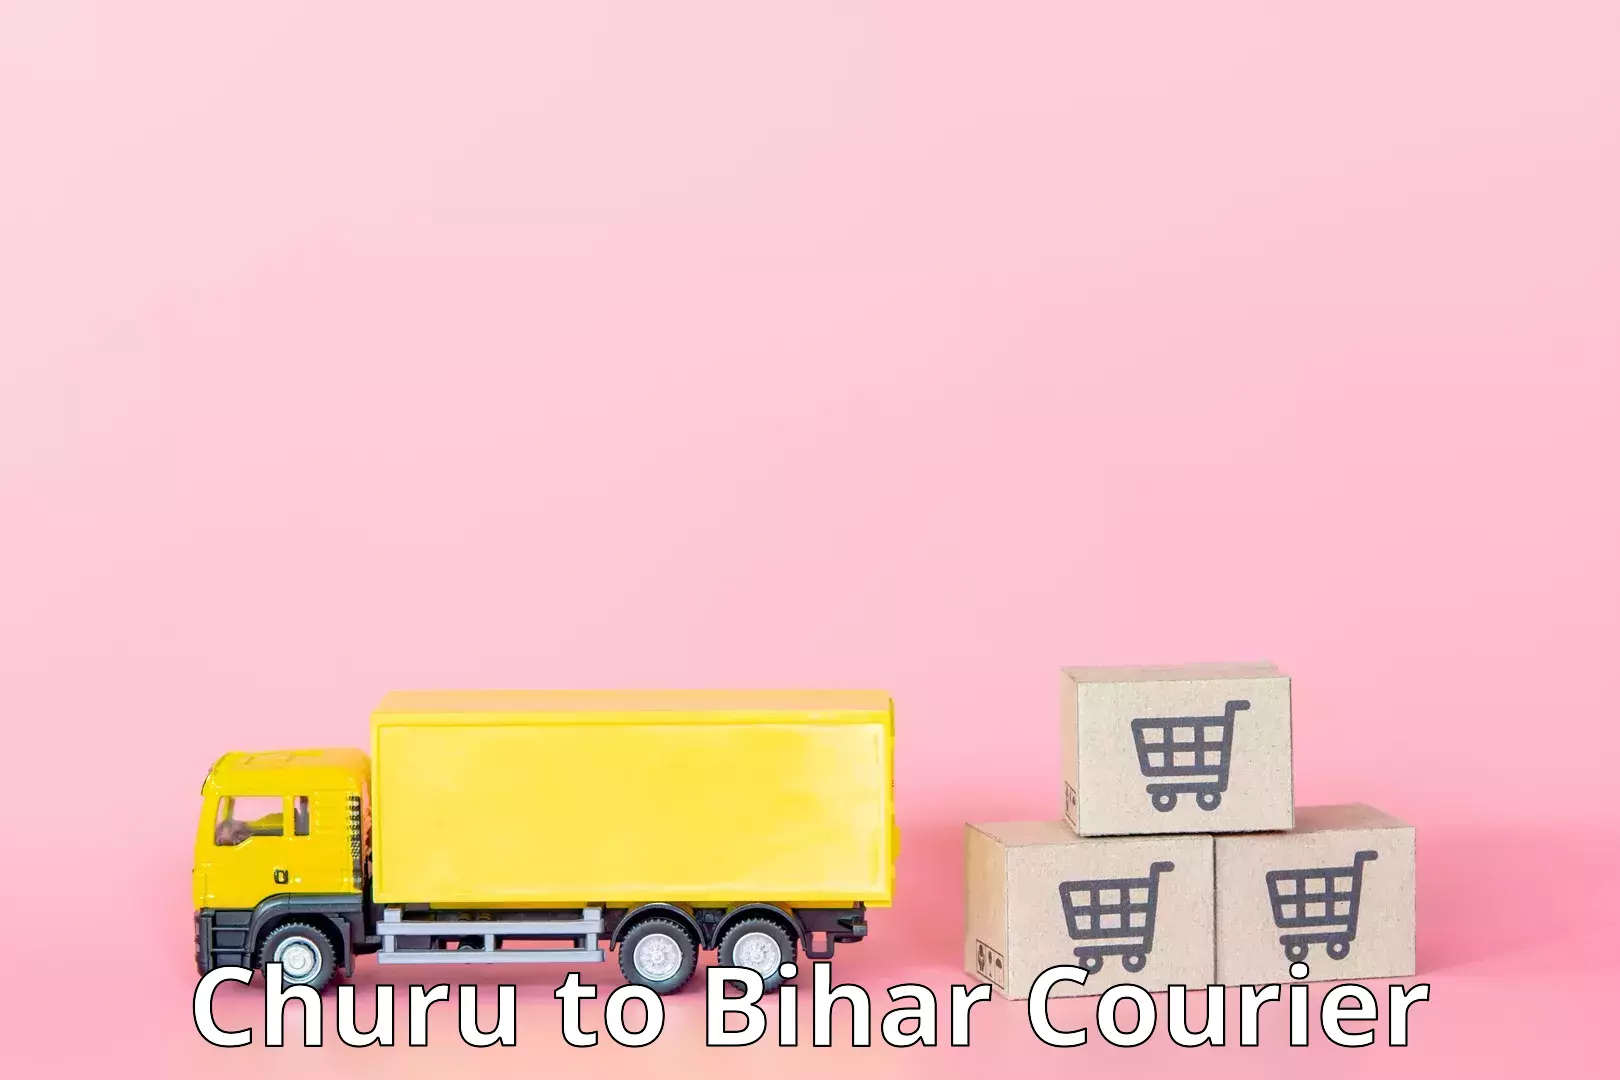 Regular parcel service Churu to Lakhisarai